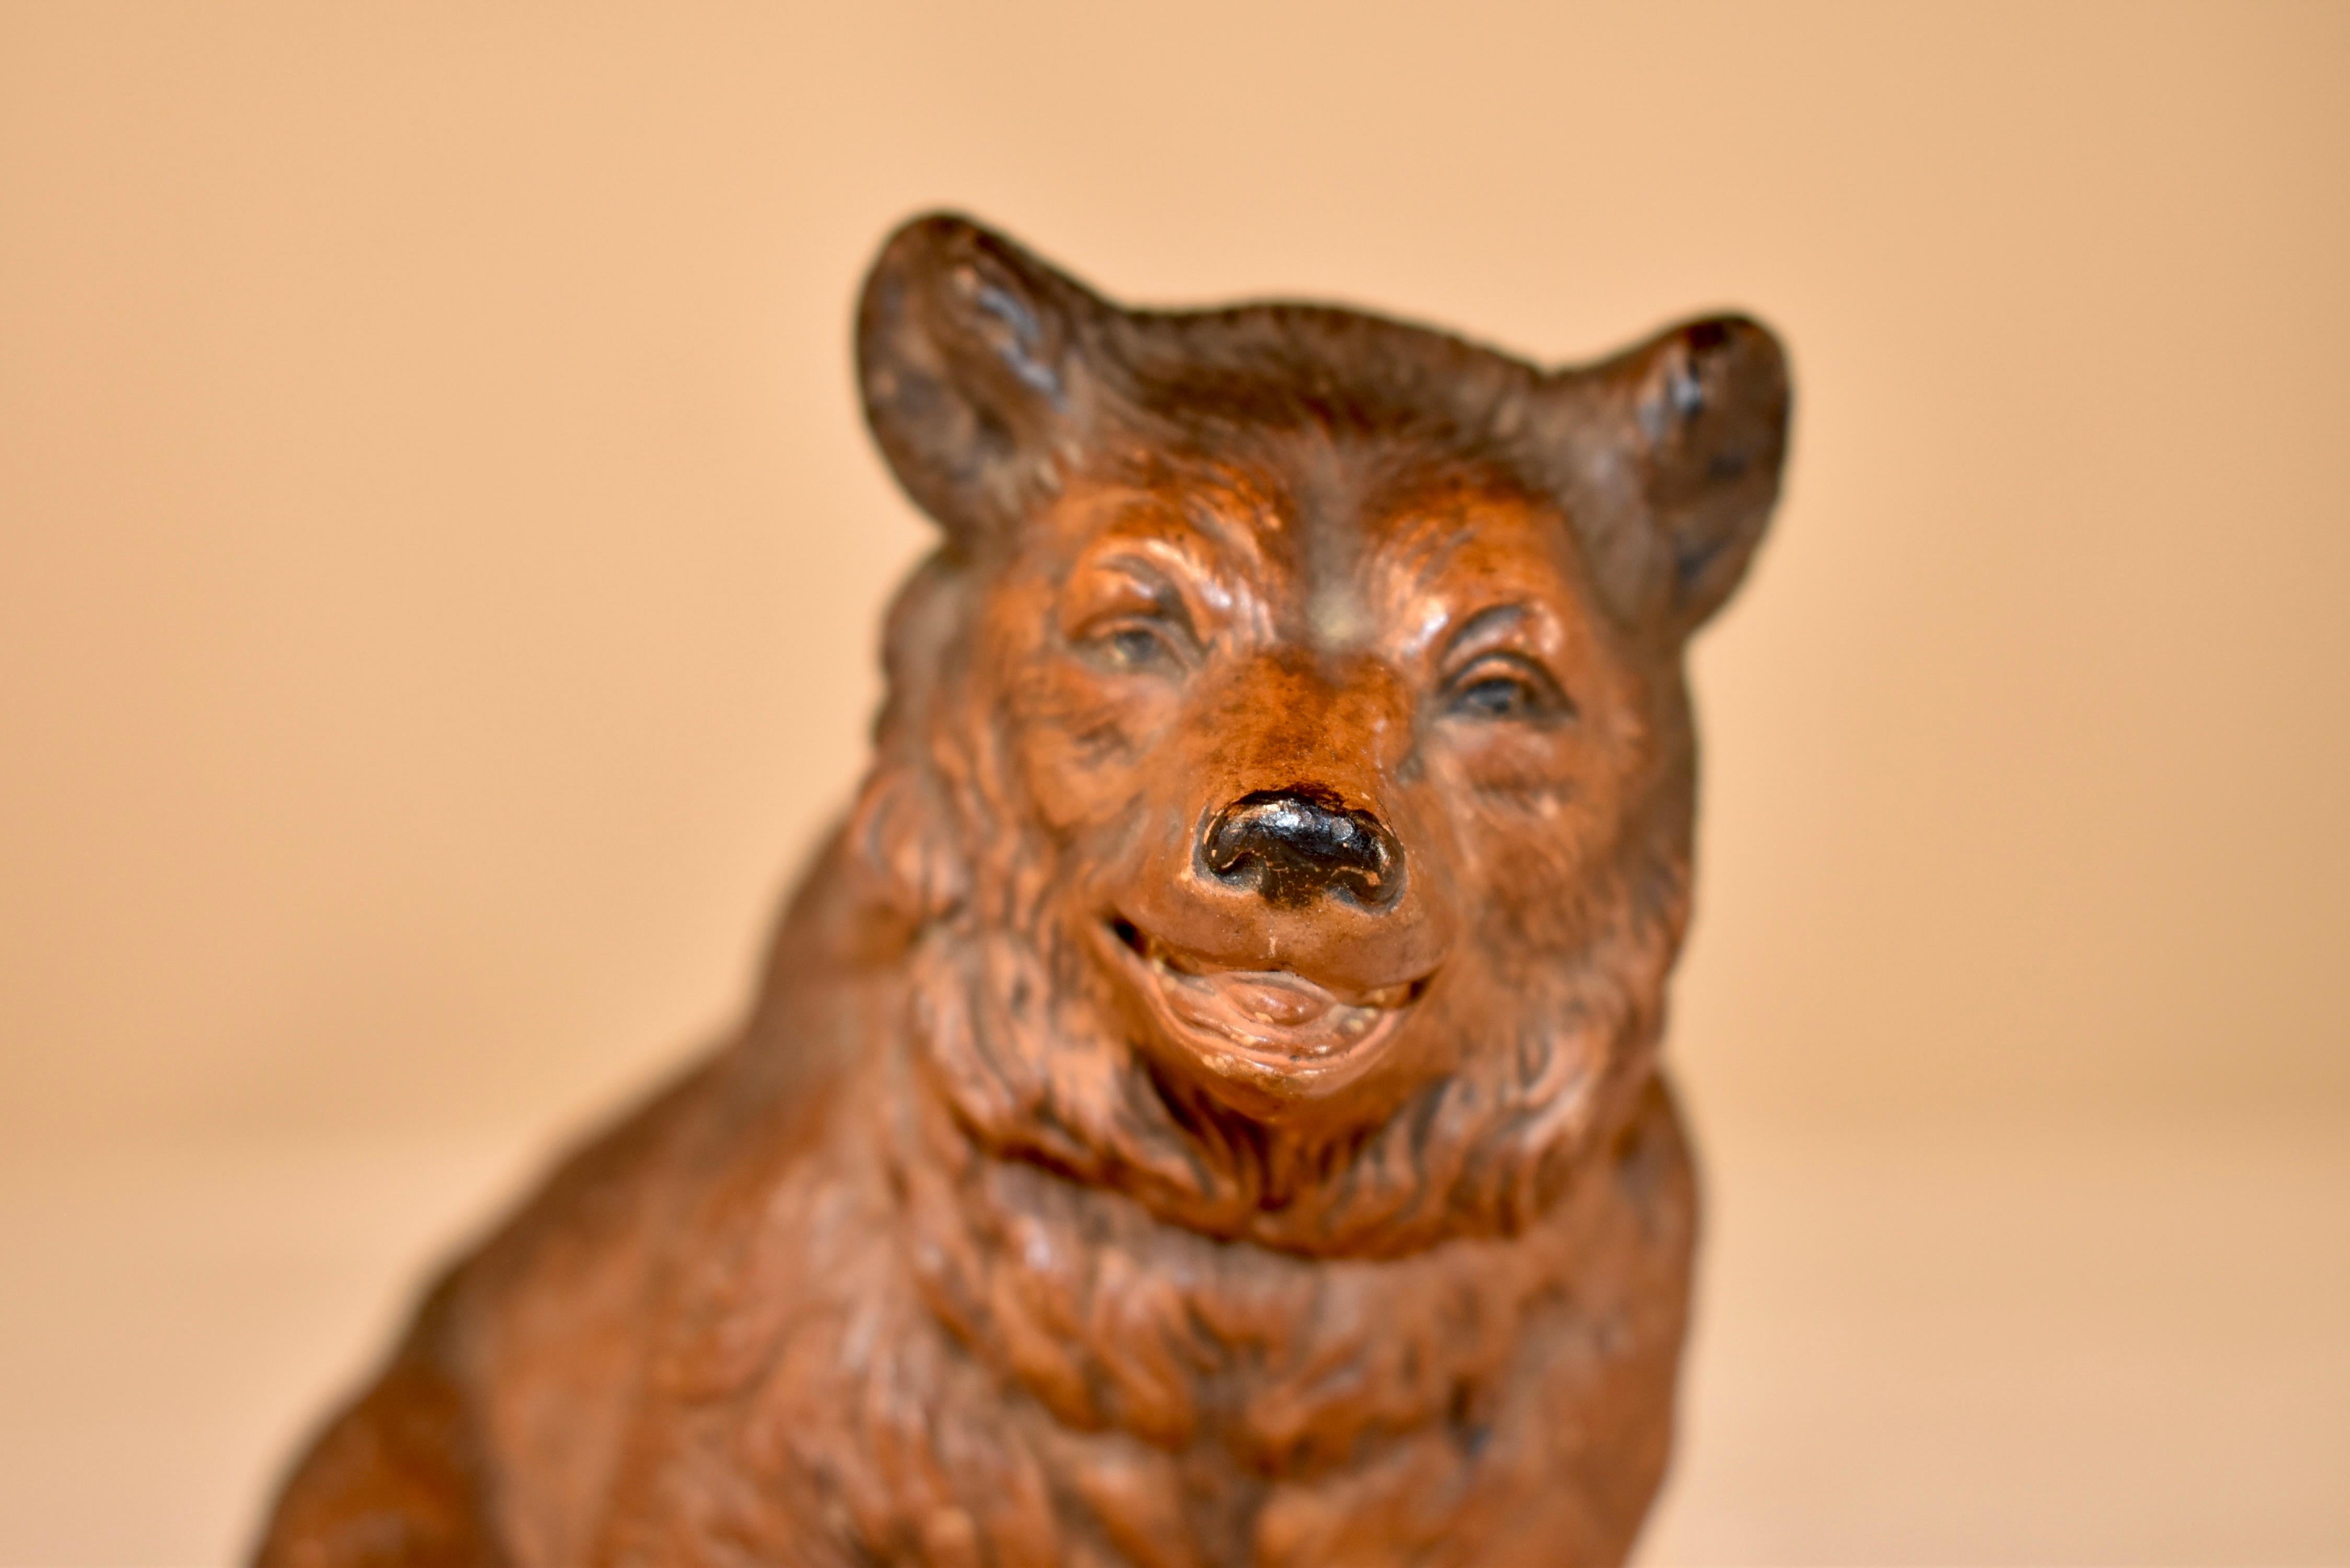 Figurine d'ours en terre cuite du 19e siècle, originaire d'Autriche. Il est un moule merveilleux et est peint à la main avec une telle expression ! Il a de beaux détails et est certain de vous faire sourire.